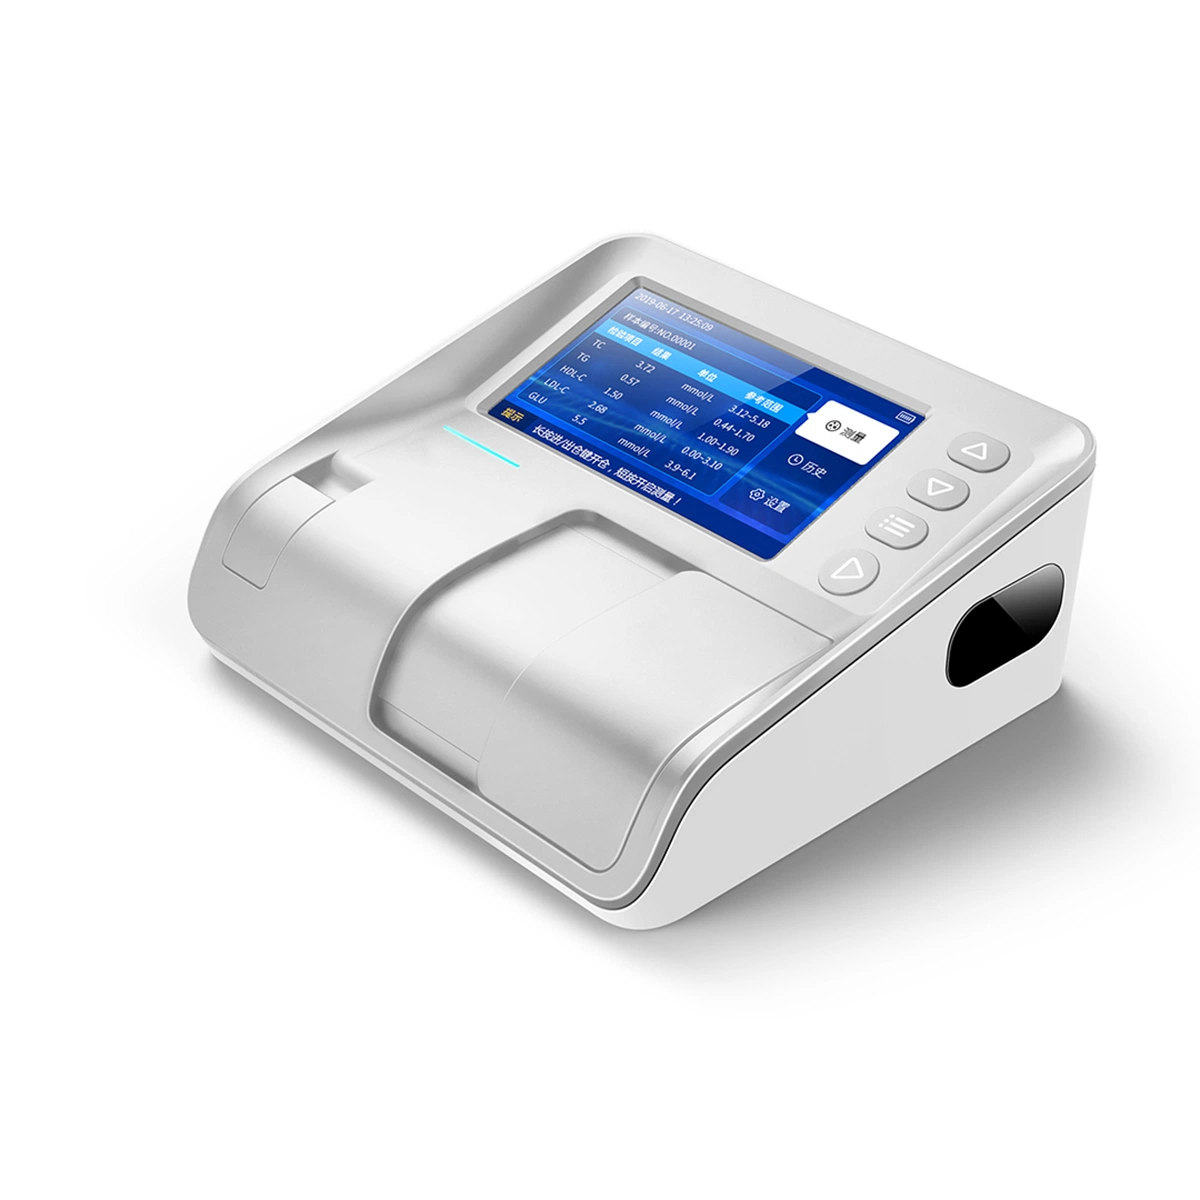 Portable Auto Chemistry Analyzer Semi-Auto Clinical Medical Poct Dry Blood Test Analyzer